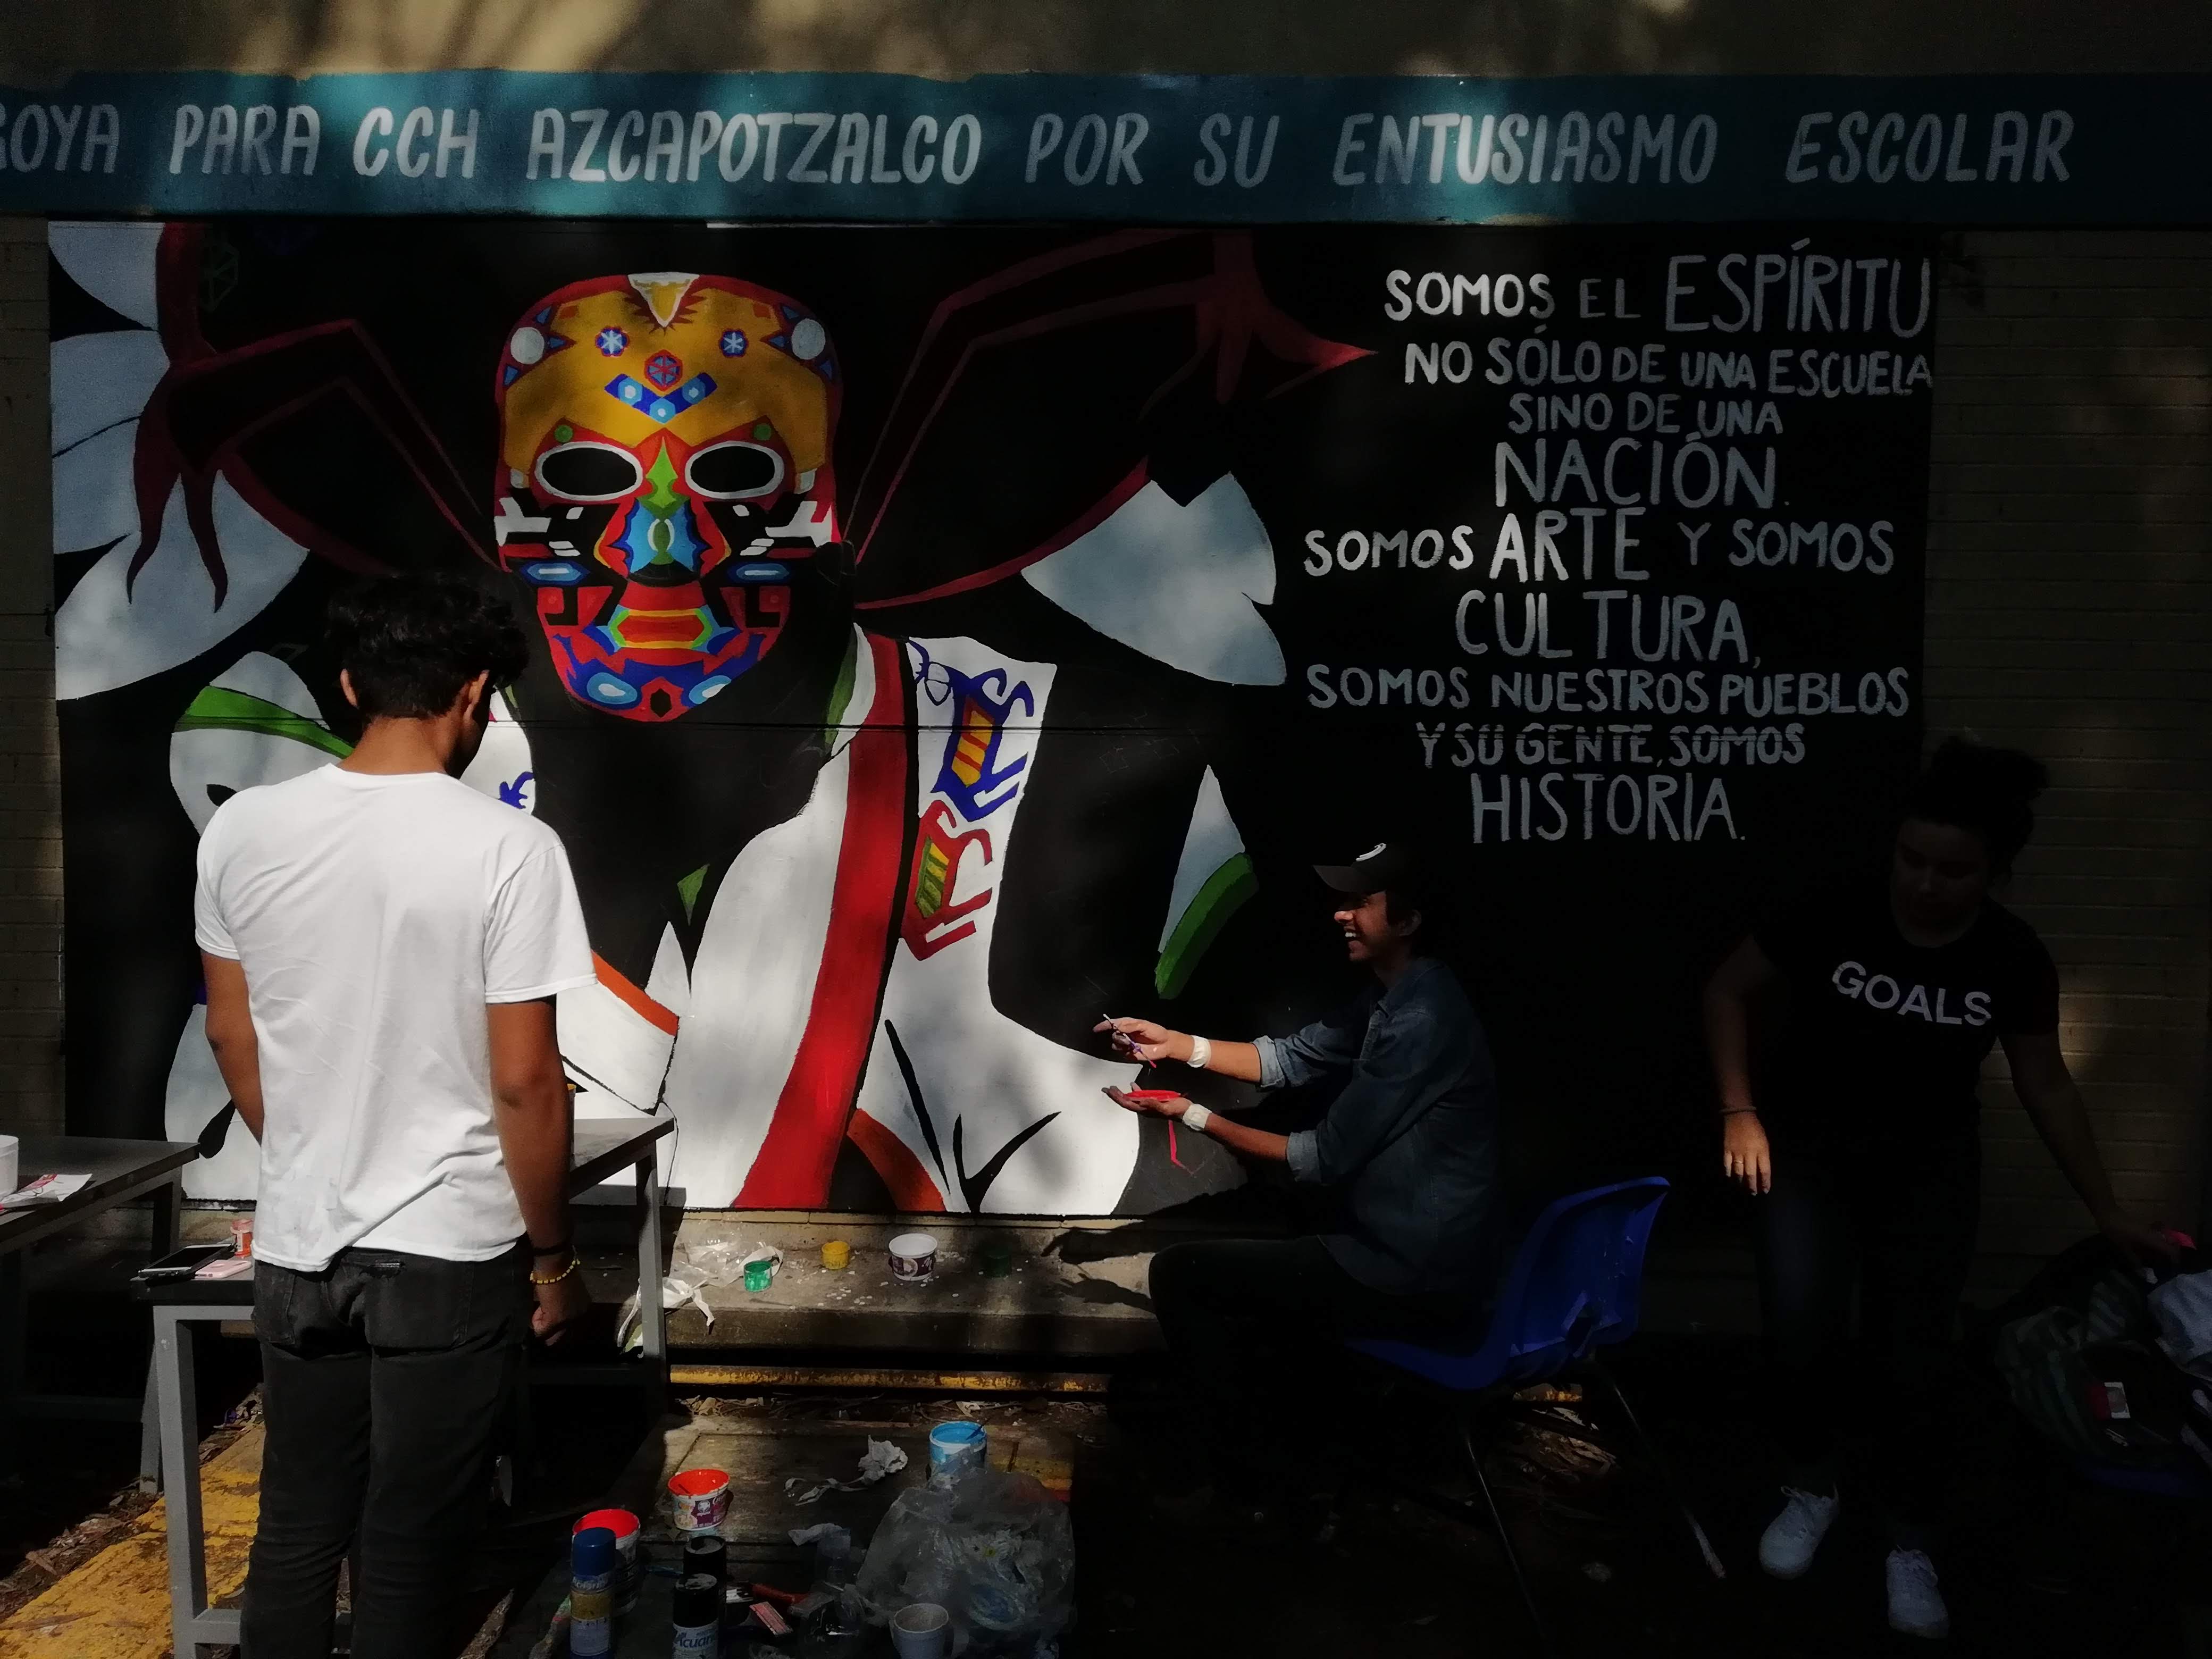 En la mañana los estudiantes del CCH Azcapo pintan sus muros con rebeldía; en la tarde los porros lanzan bombas molotov y petardos.